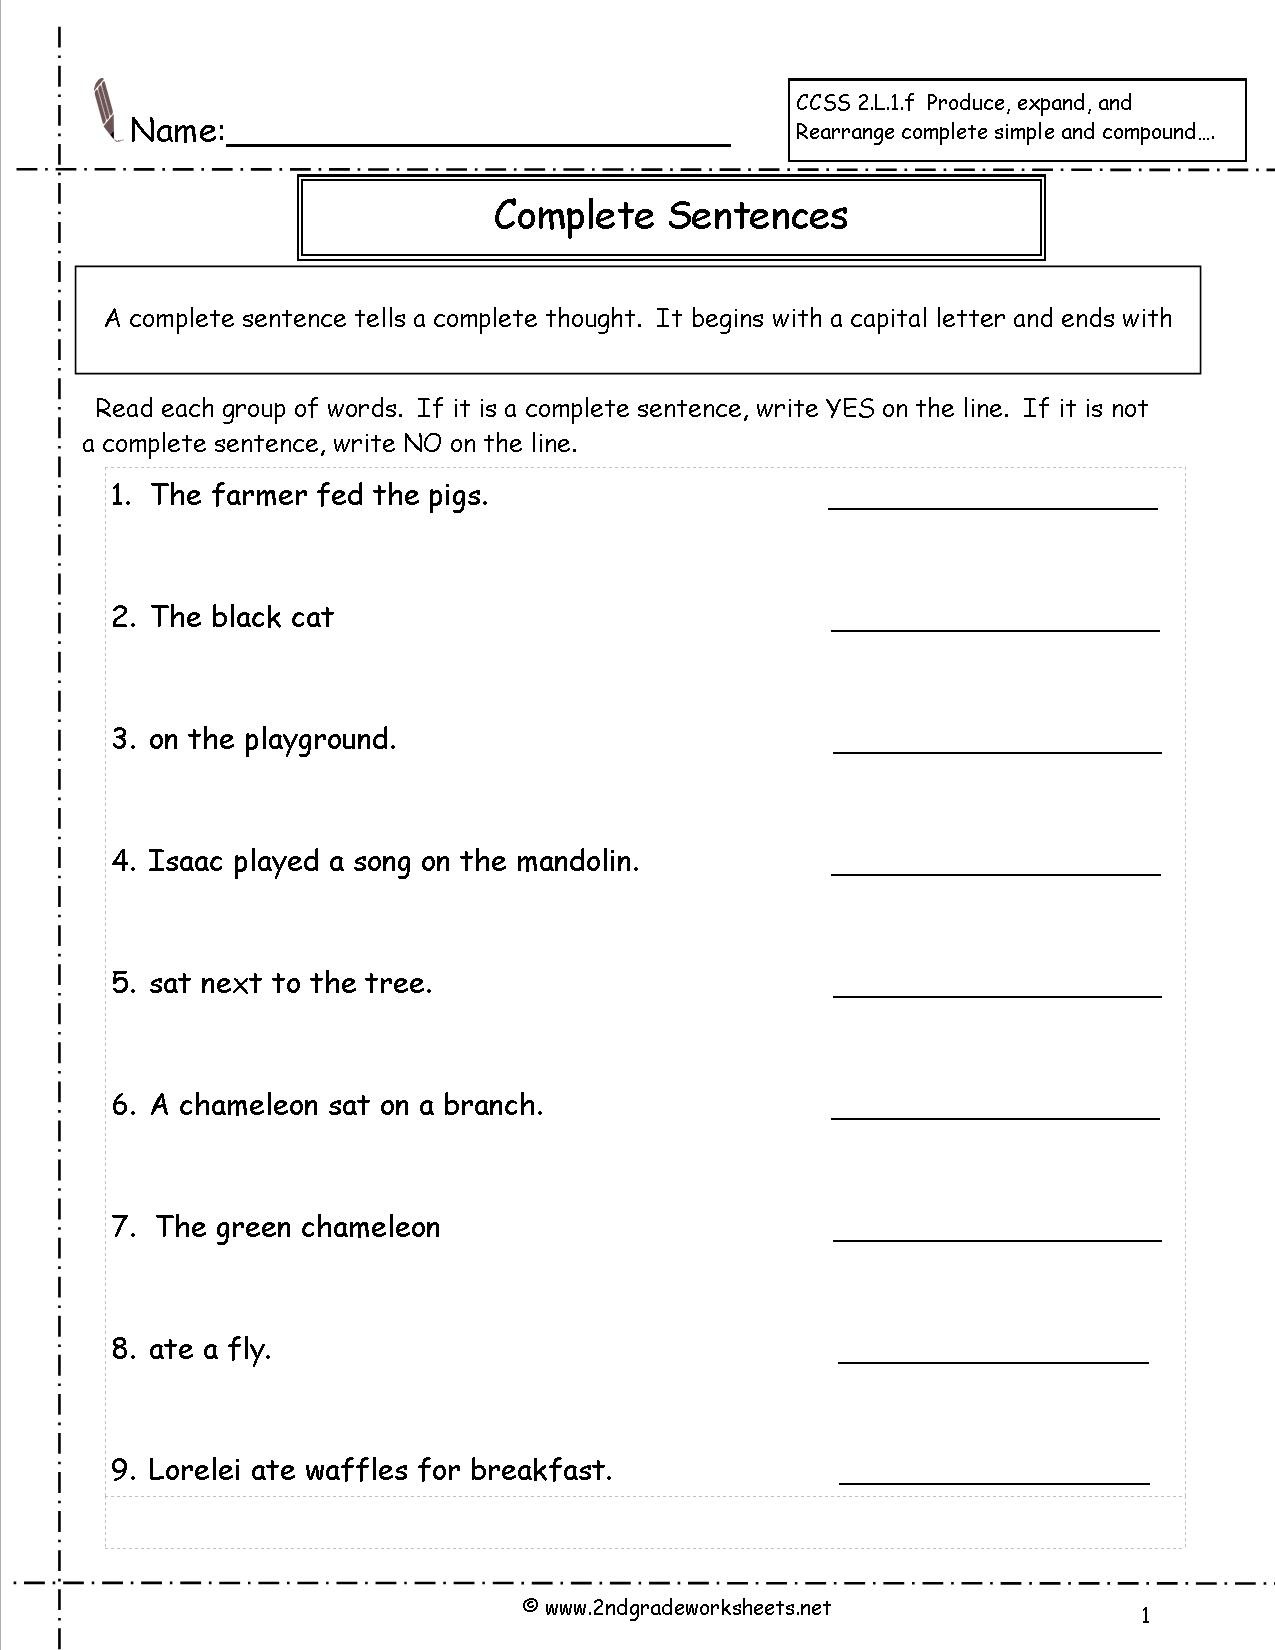 Complete Sentences Worksheets 2nd Grade Second Grade Sentences Worksheets Ccss 2 L 1 F Worksheets